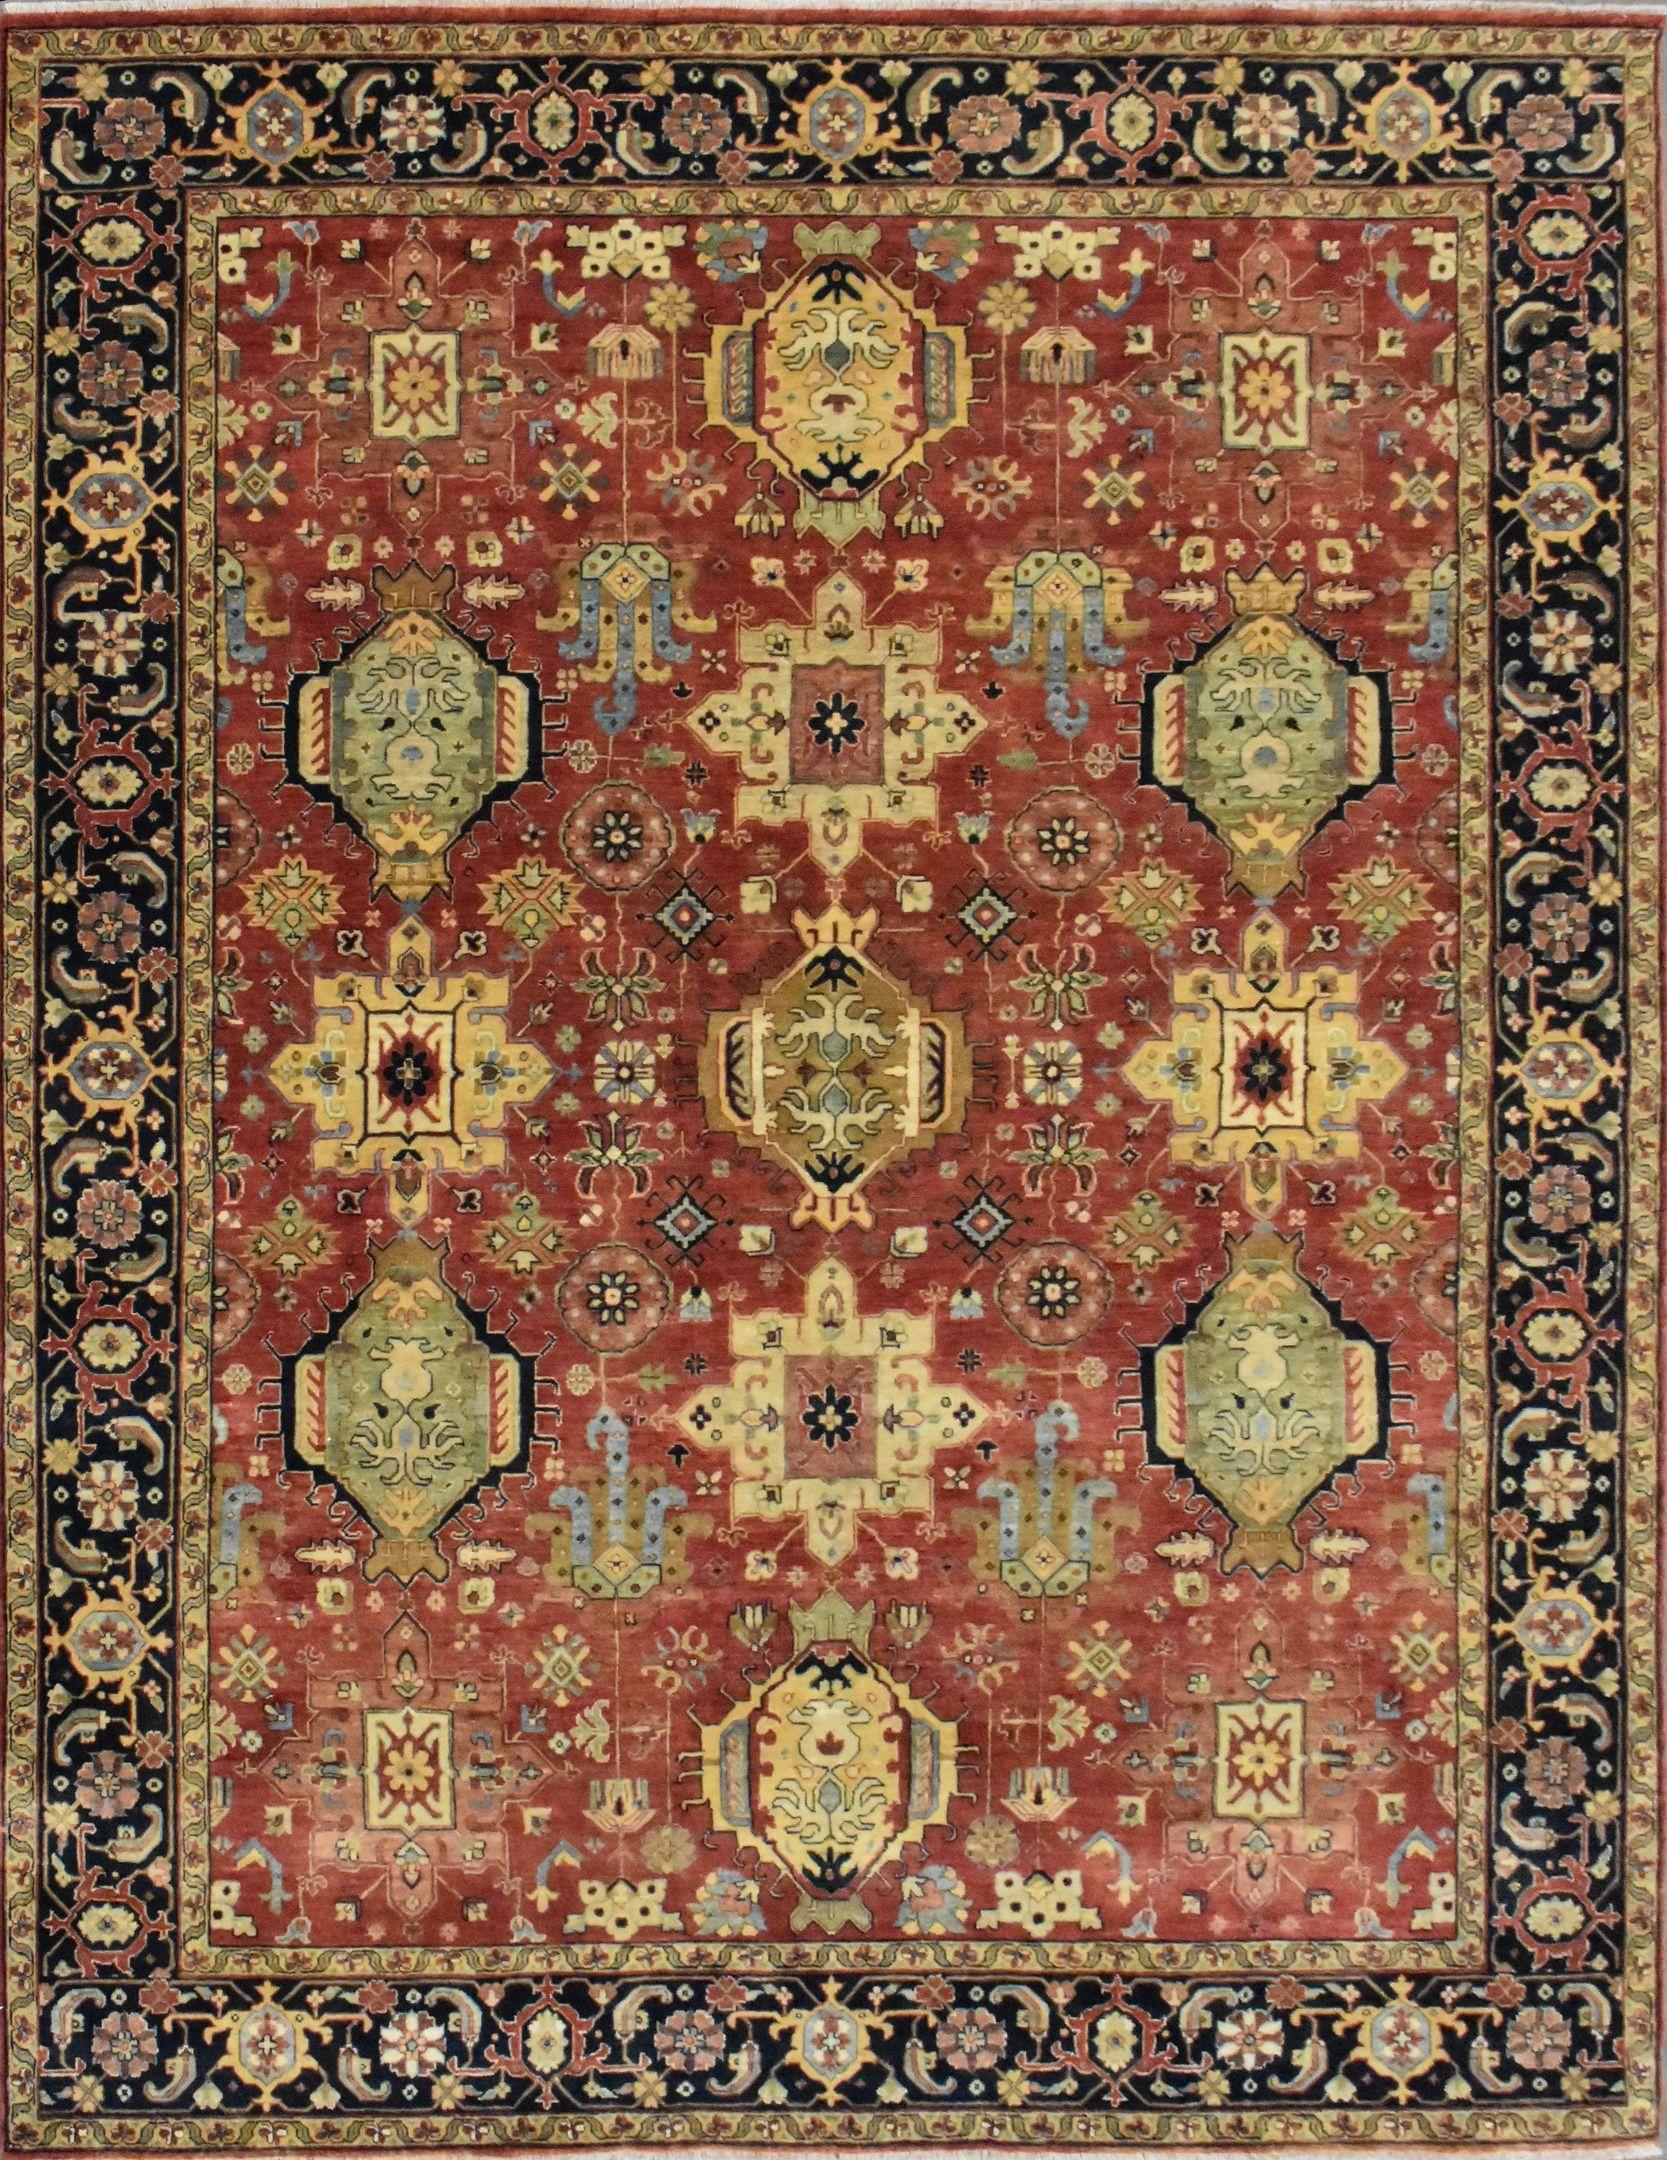 Schöner neuer Teppich mit schönem persischen Design und schönen Farben, komplett handgeknüpft mit Wollsamt auf Baumwollbasis.